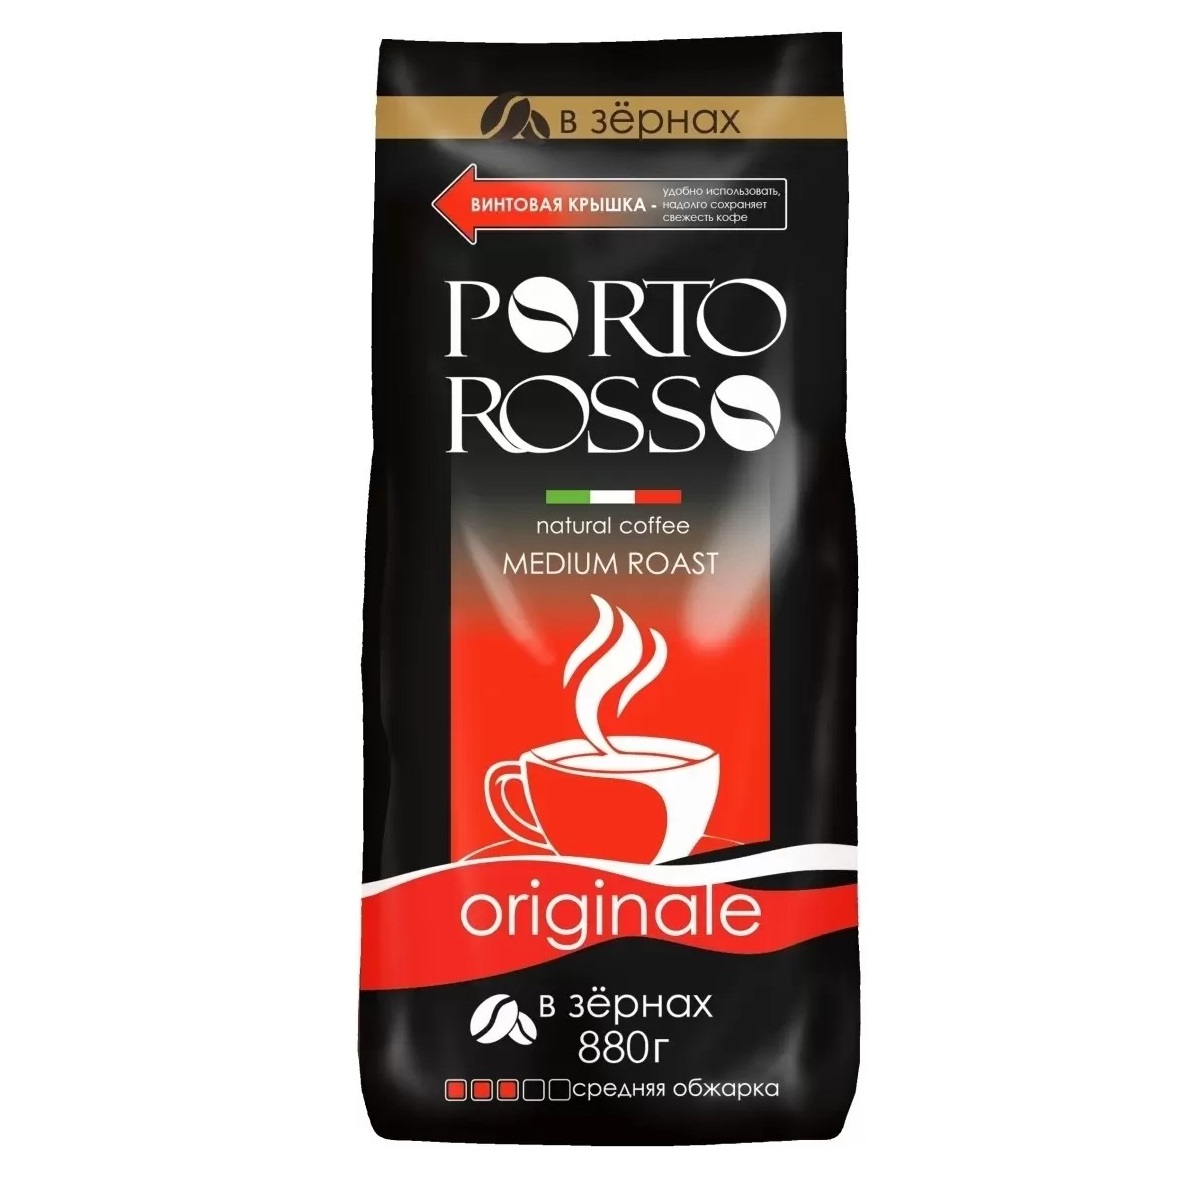 Кофе Porto Rosso в зернах Originale 880г кофе в зернах porto rosso platino 220 г